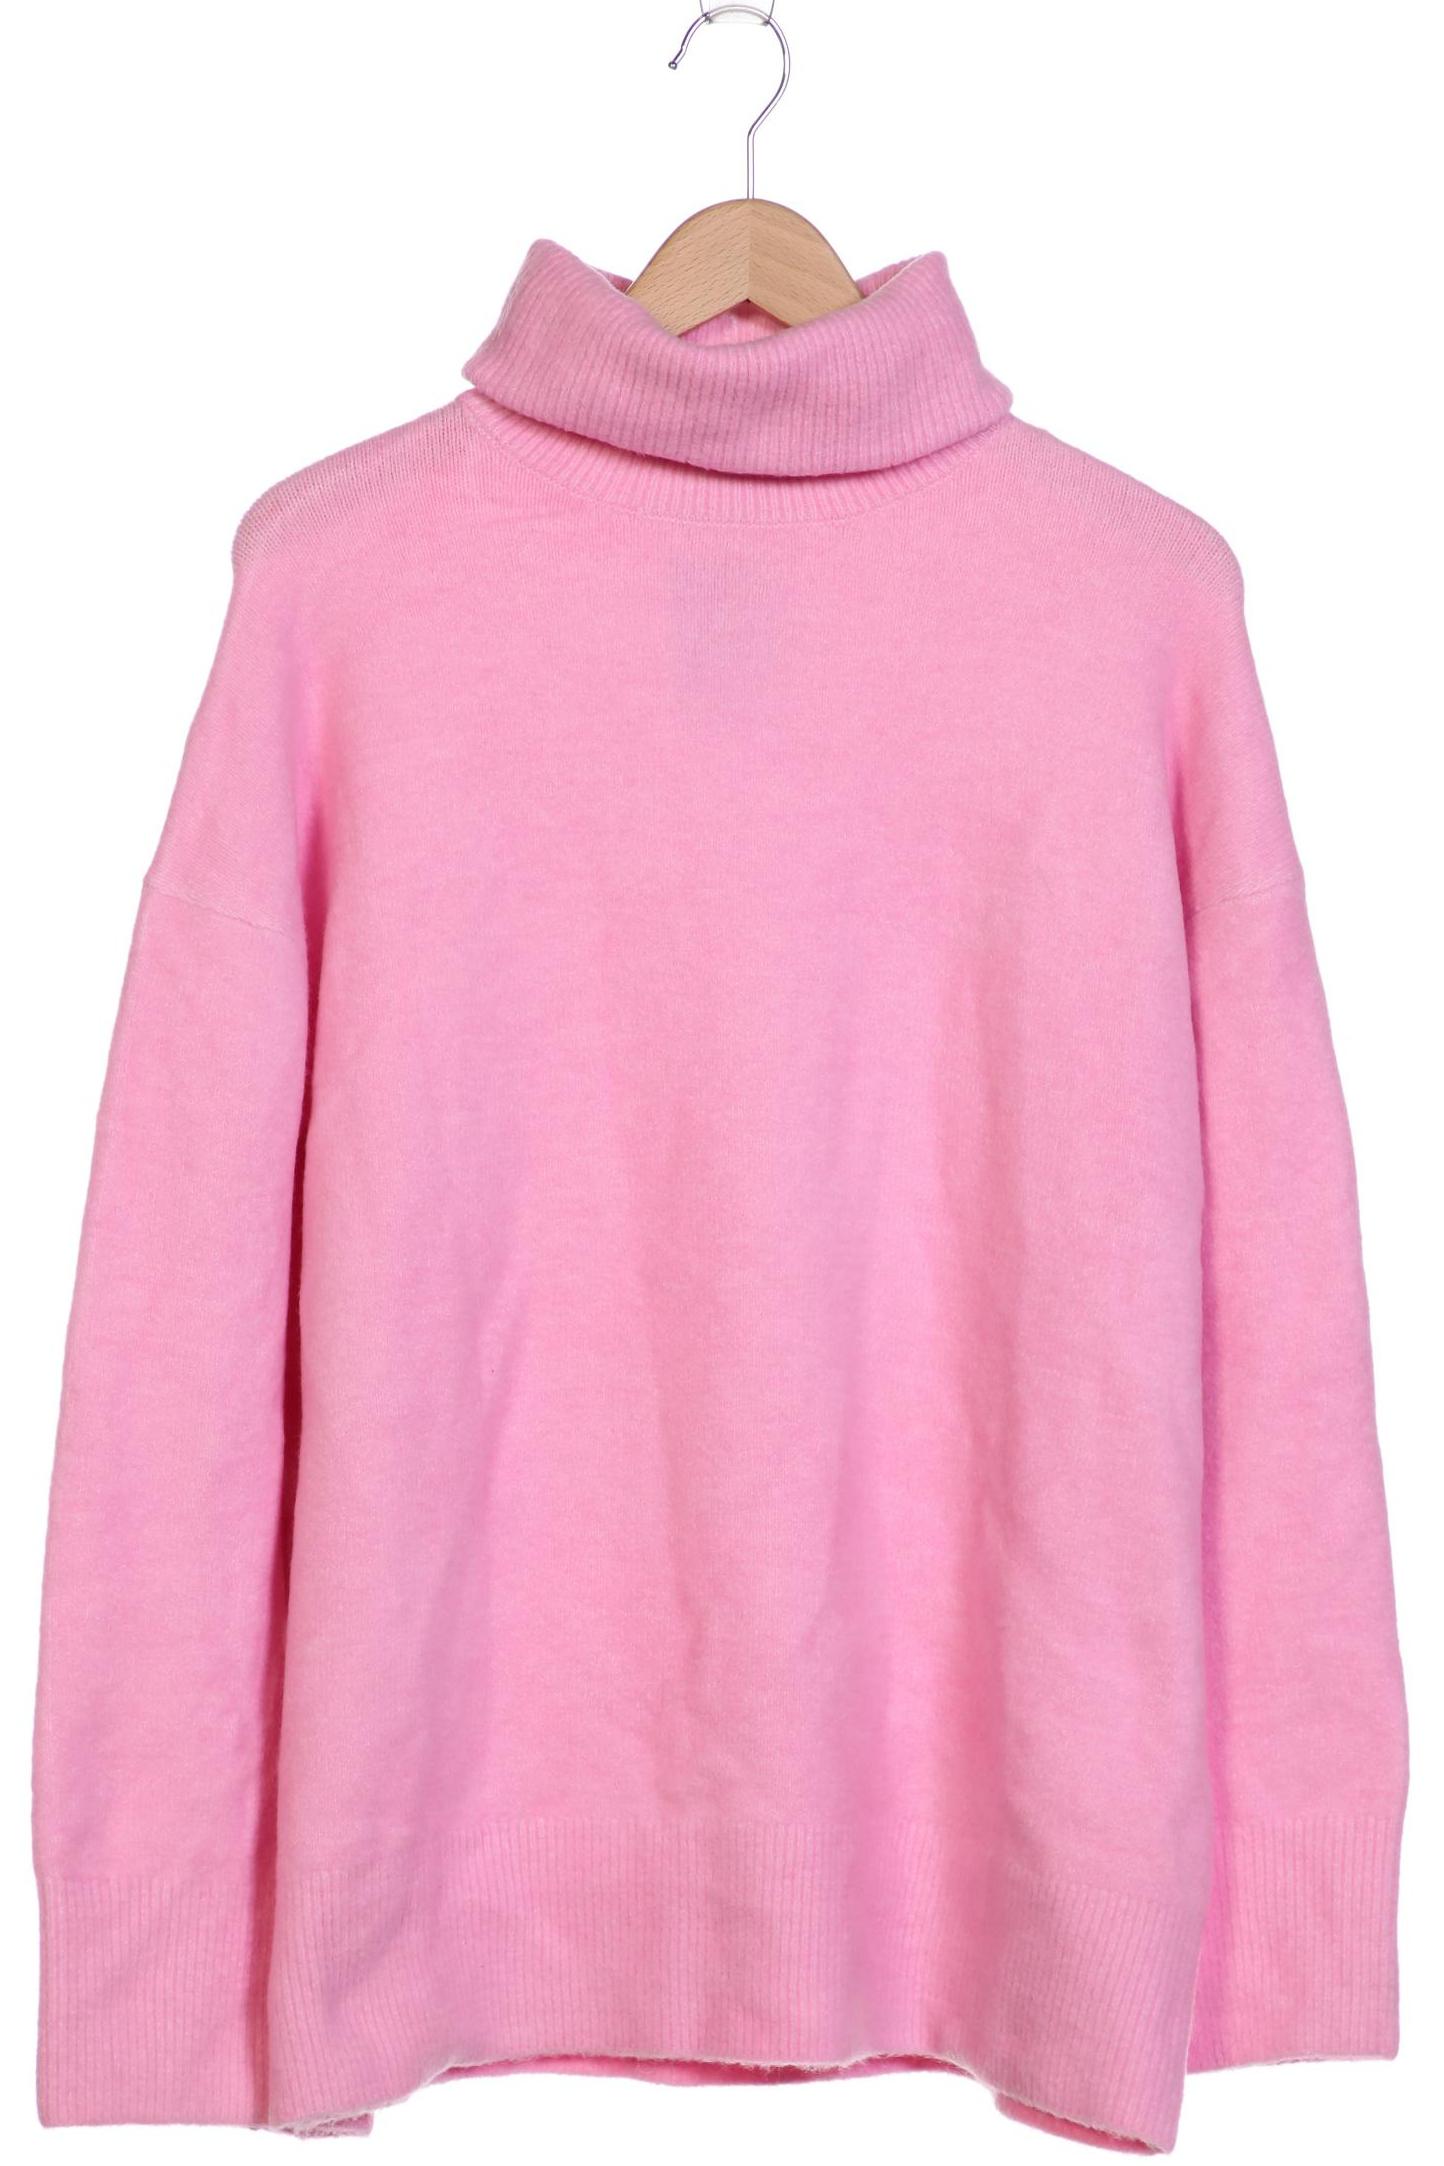 Zara Damen Pullover, pink, Gr. 38 von ZARA